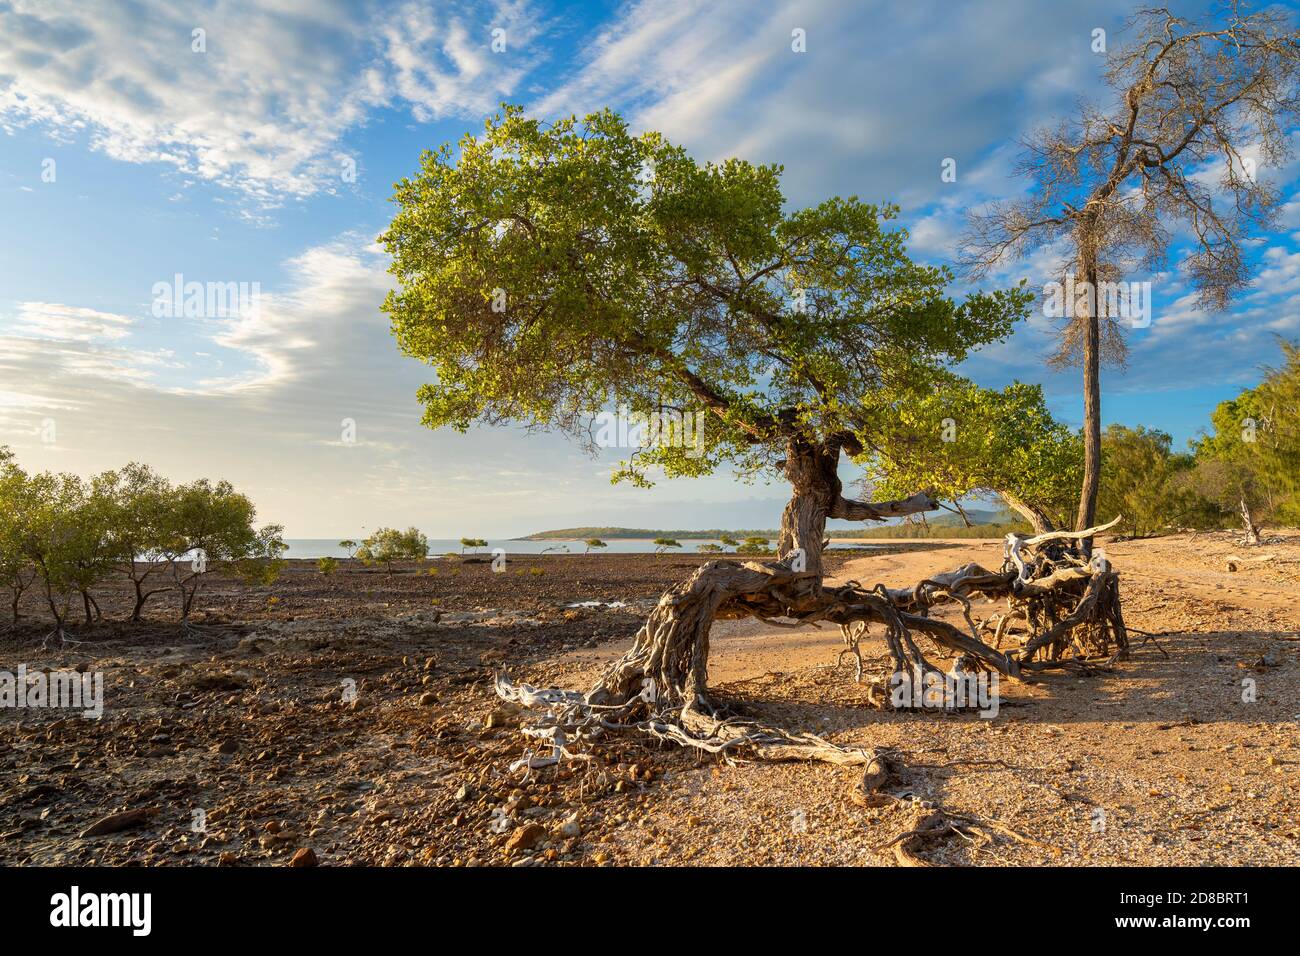 Racines de mangrove exposées en raison de l'évolution des conditions de la plage, Clairview, Central Queensland, Australie Banque D'Images